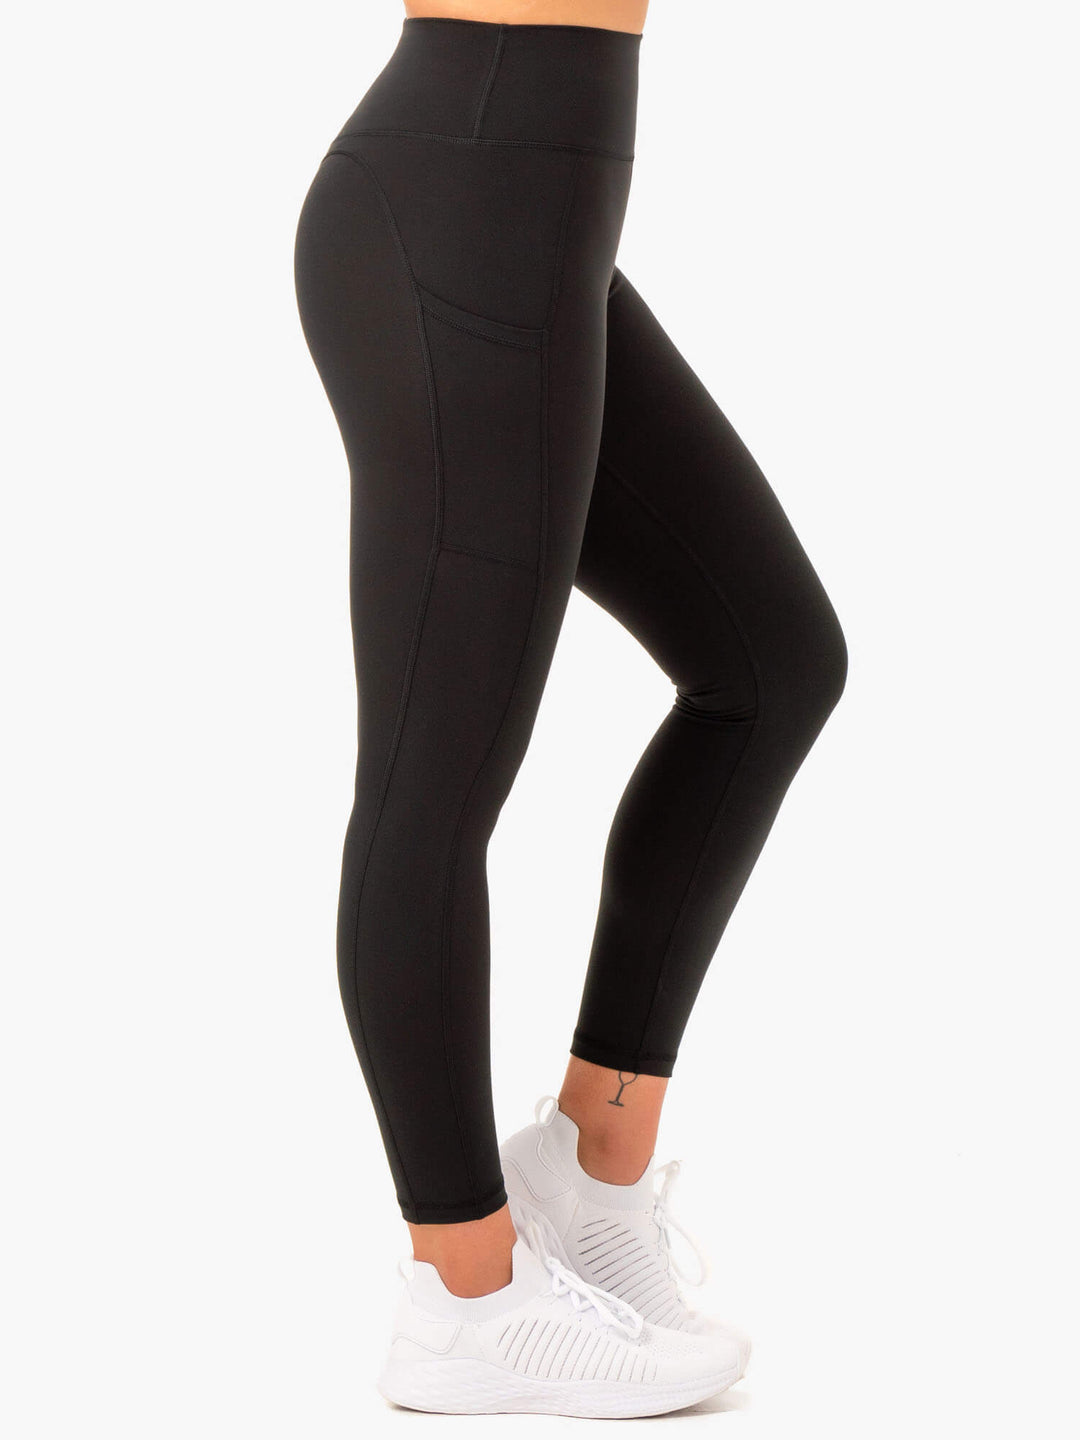 Shiny High Waist Pocket Legging black - Sports leggings - FITTwear.co.uk